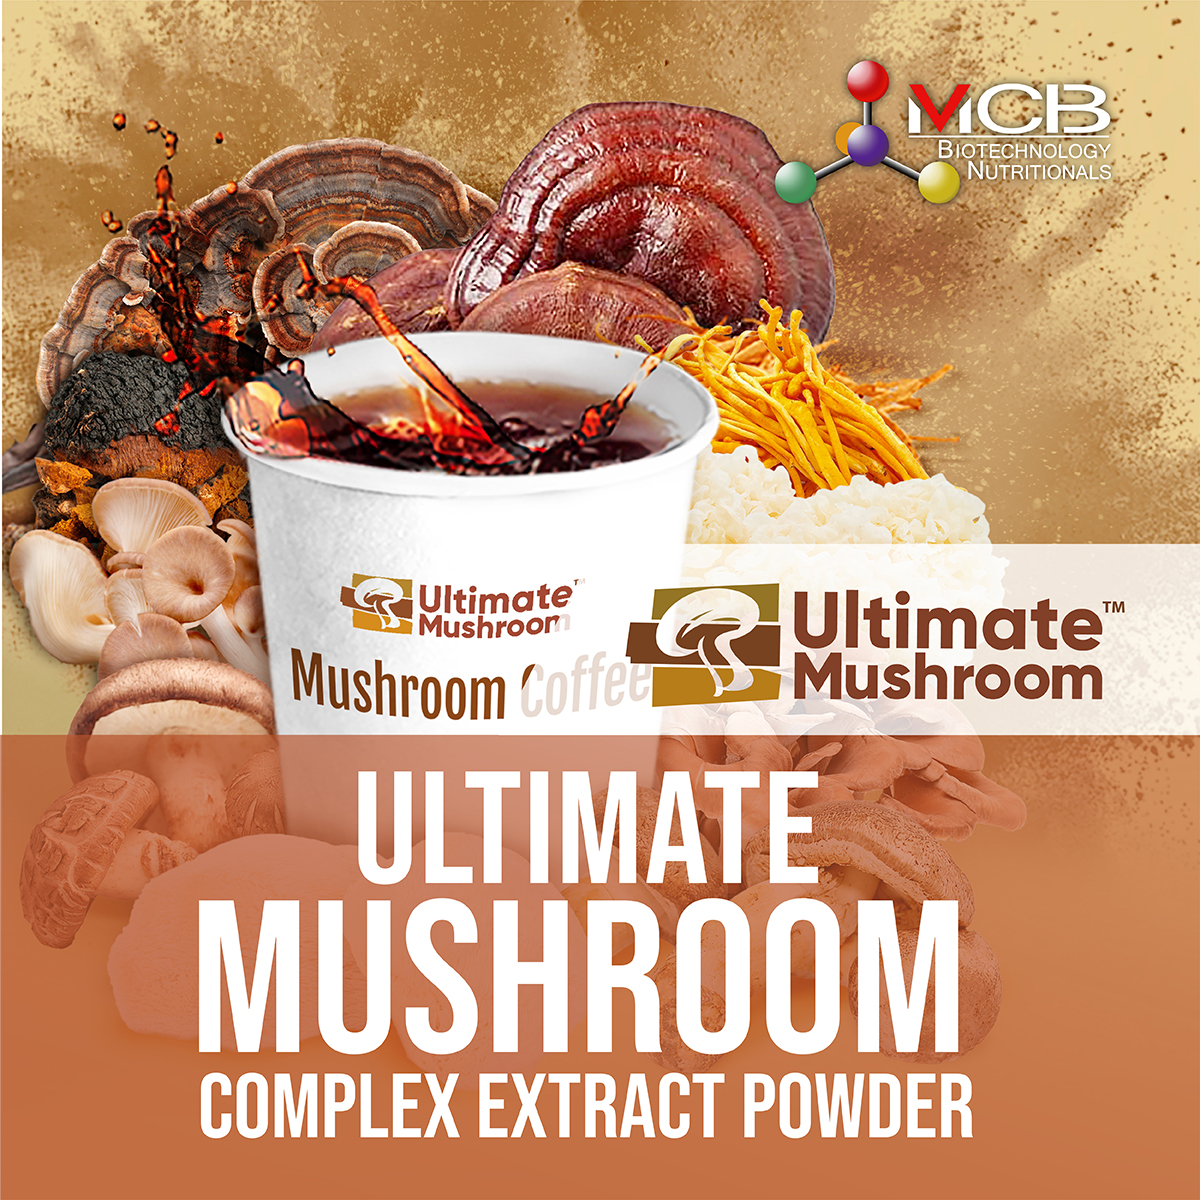 ULTIMATEMUSHROOM™ Mushroom Complex Extract Powder